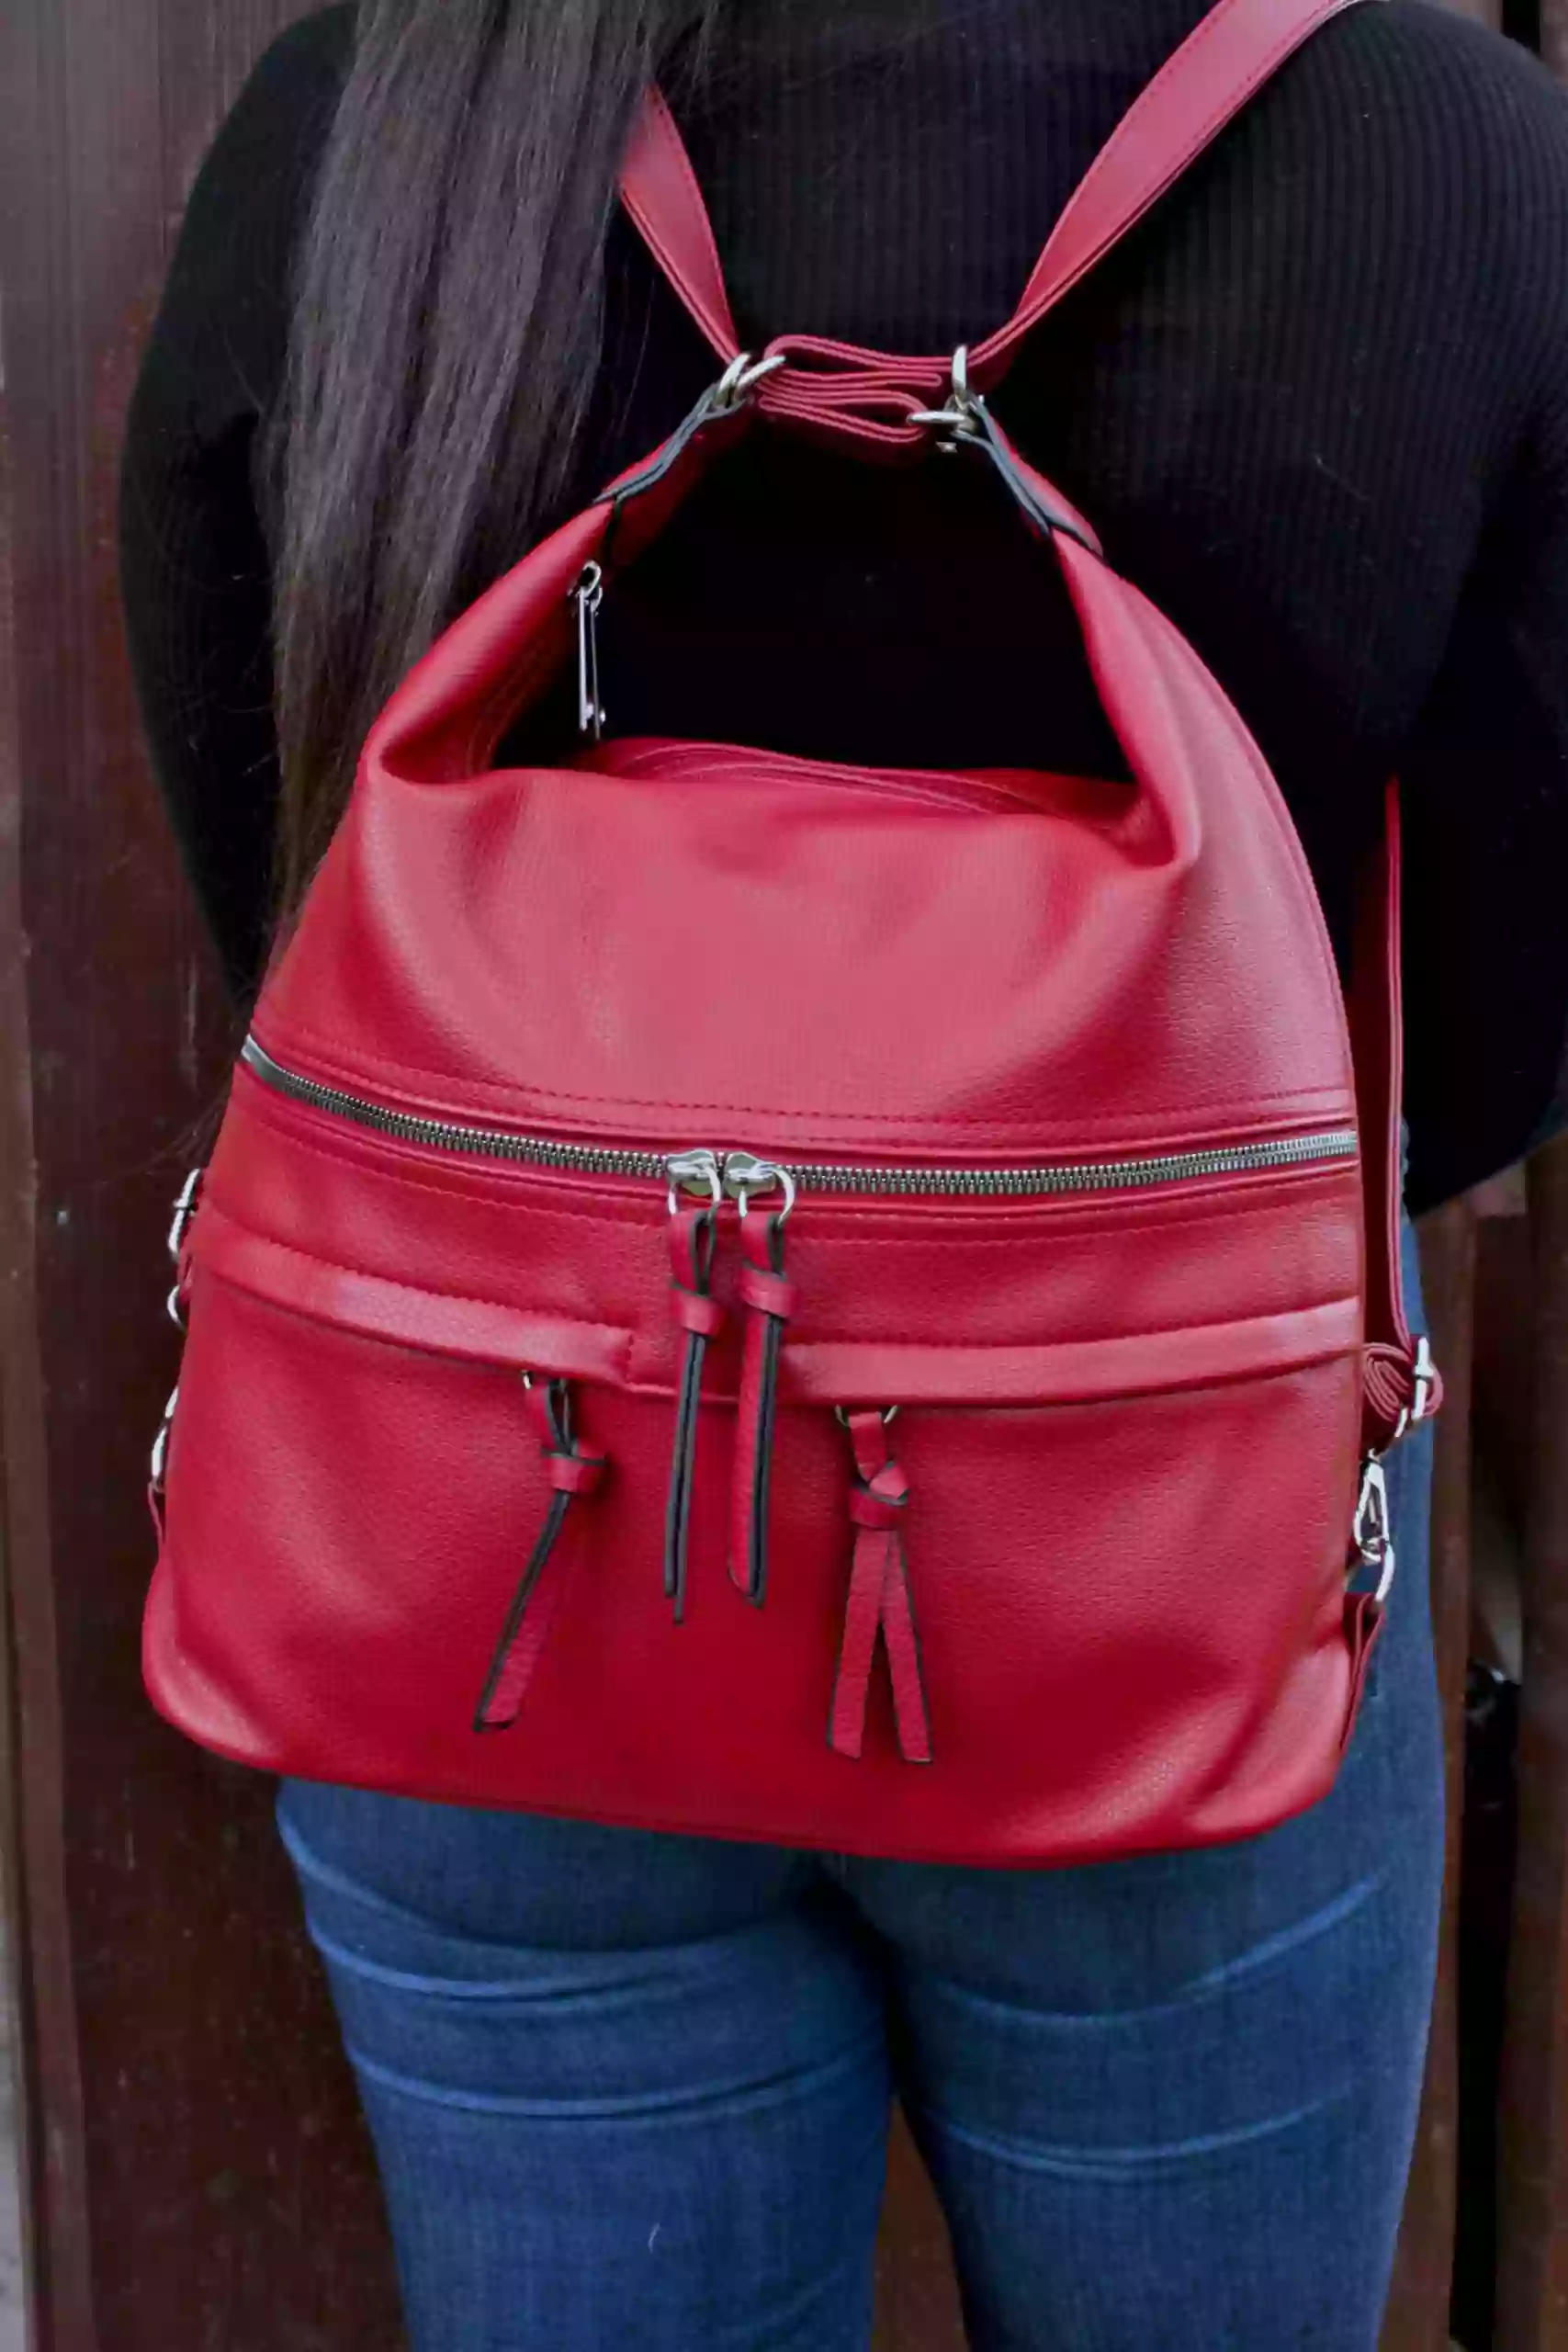 Velký dámský kabelko-batoh s praktickými kapsami, Tapple, H181175N2, tmavě červený, modelka s kabelko-batohem na zádech